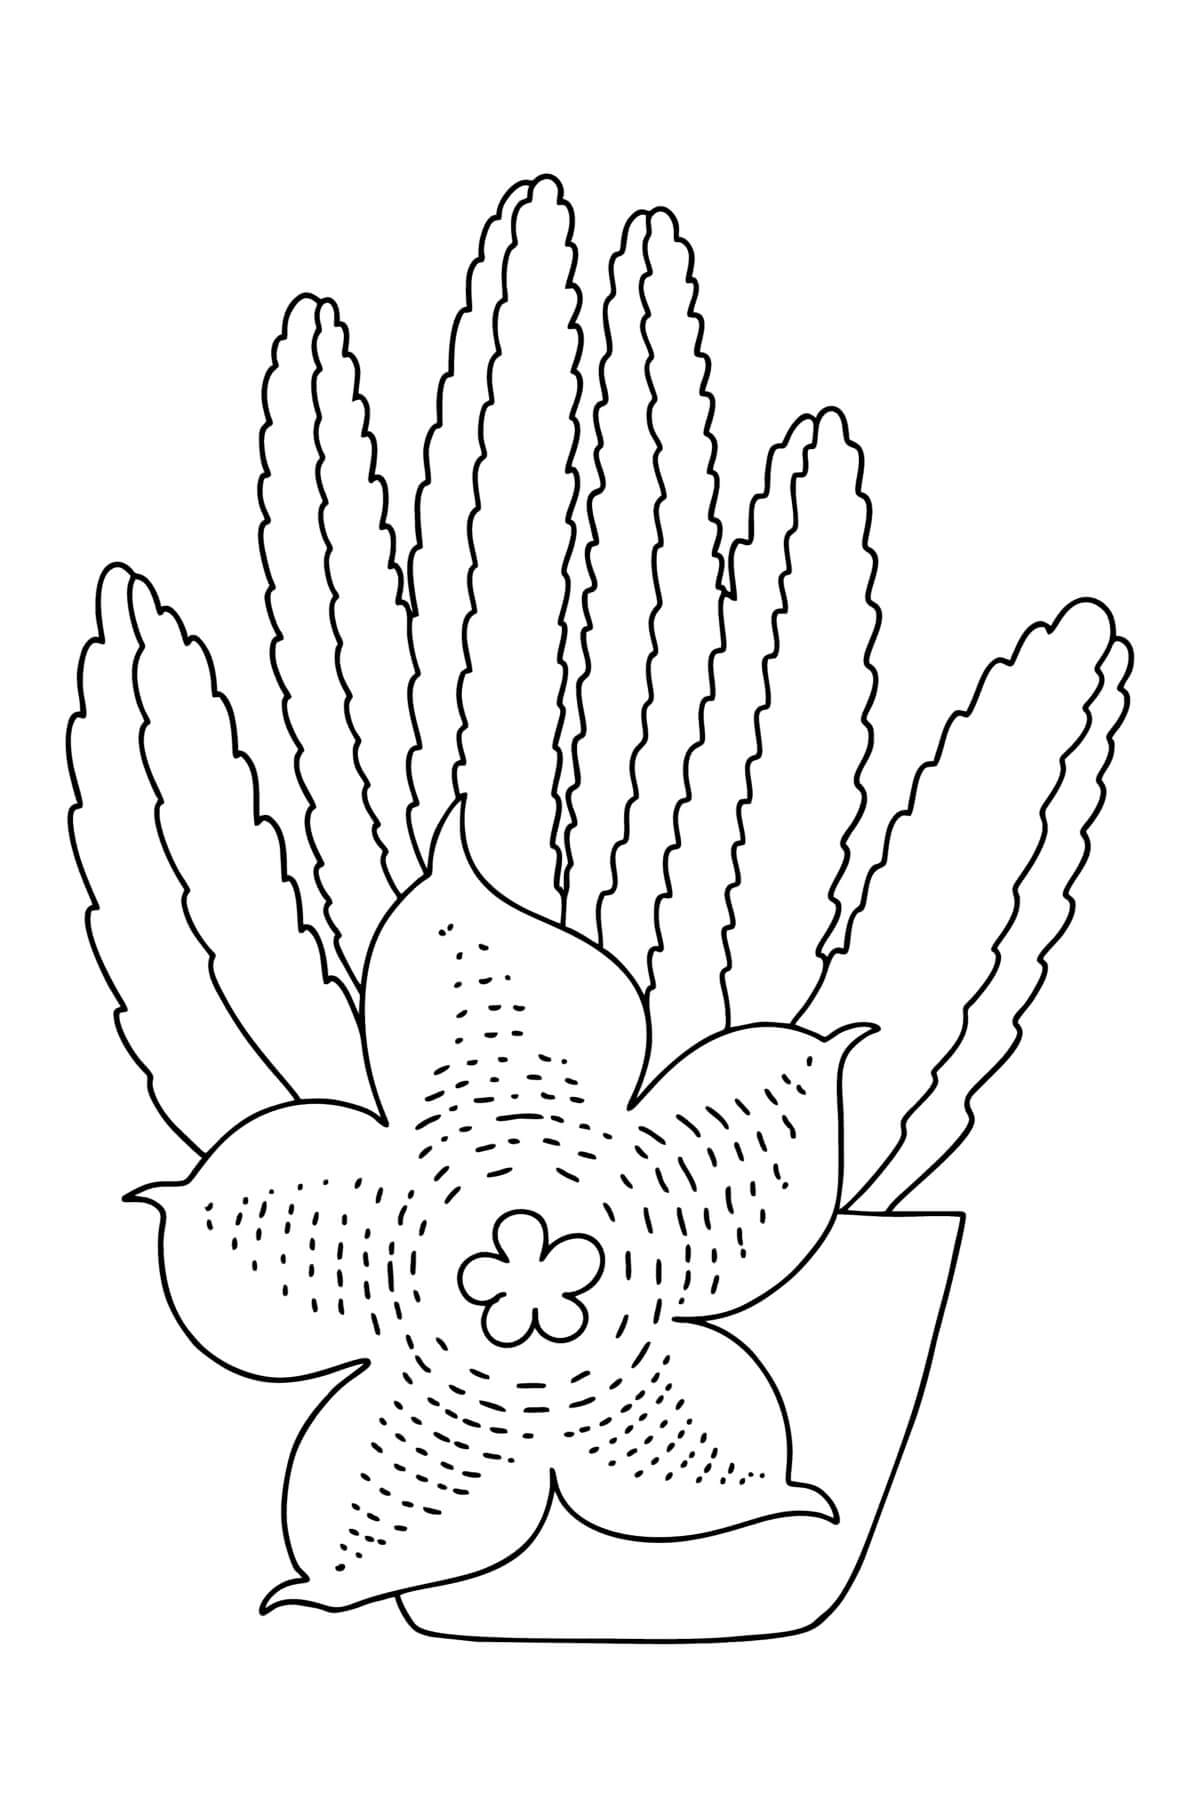 Stapelia-Kaktus